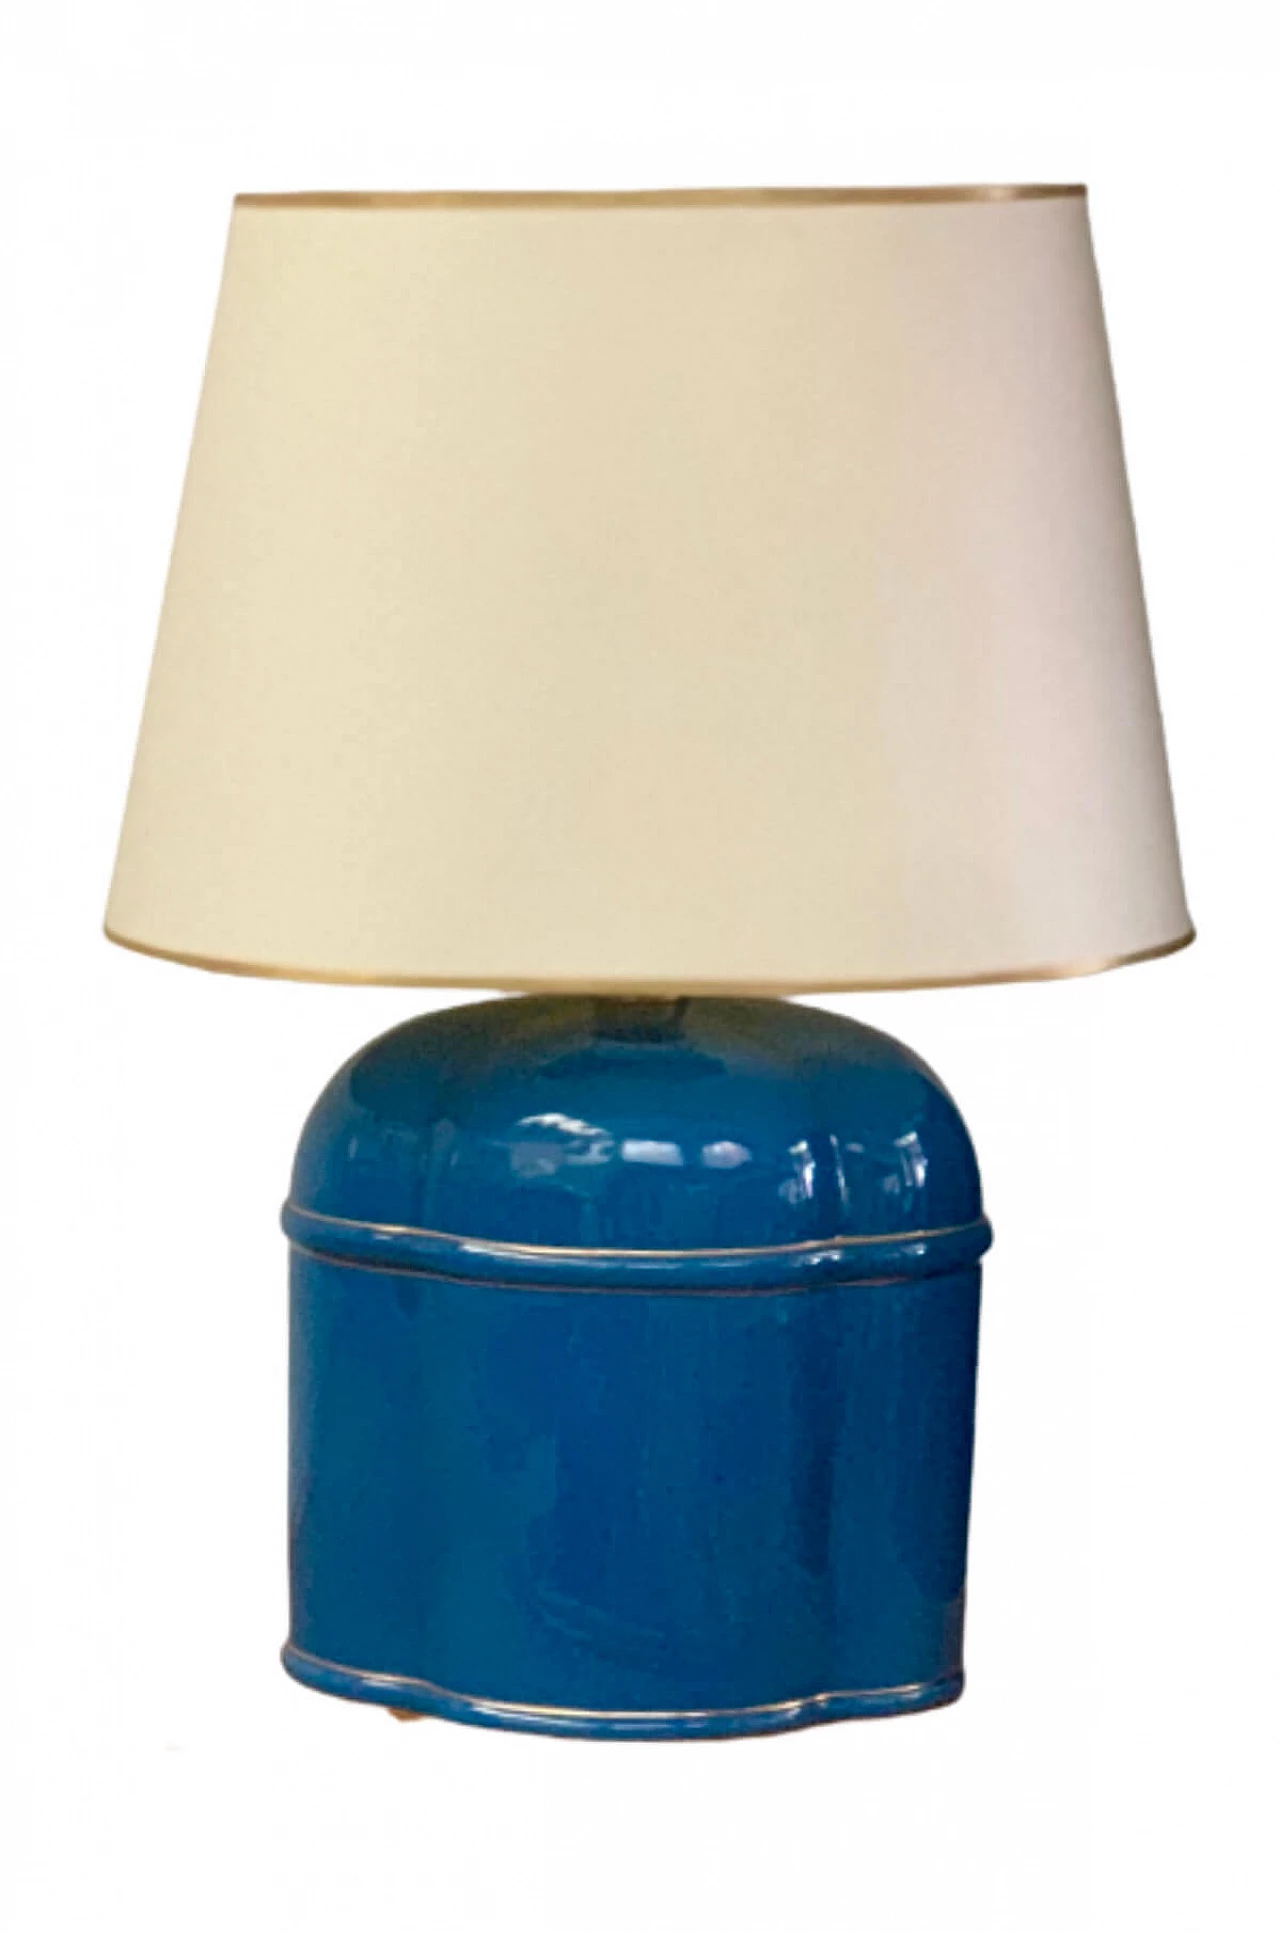 Blue ceramic table lamp by Studio Vasco Fontana, 1970s 1